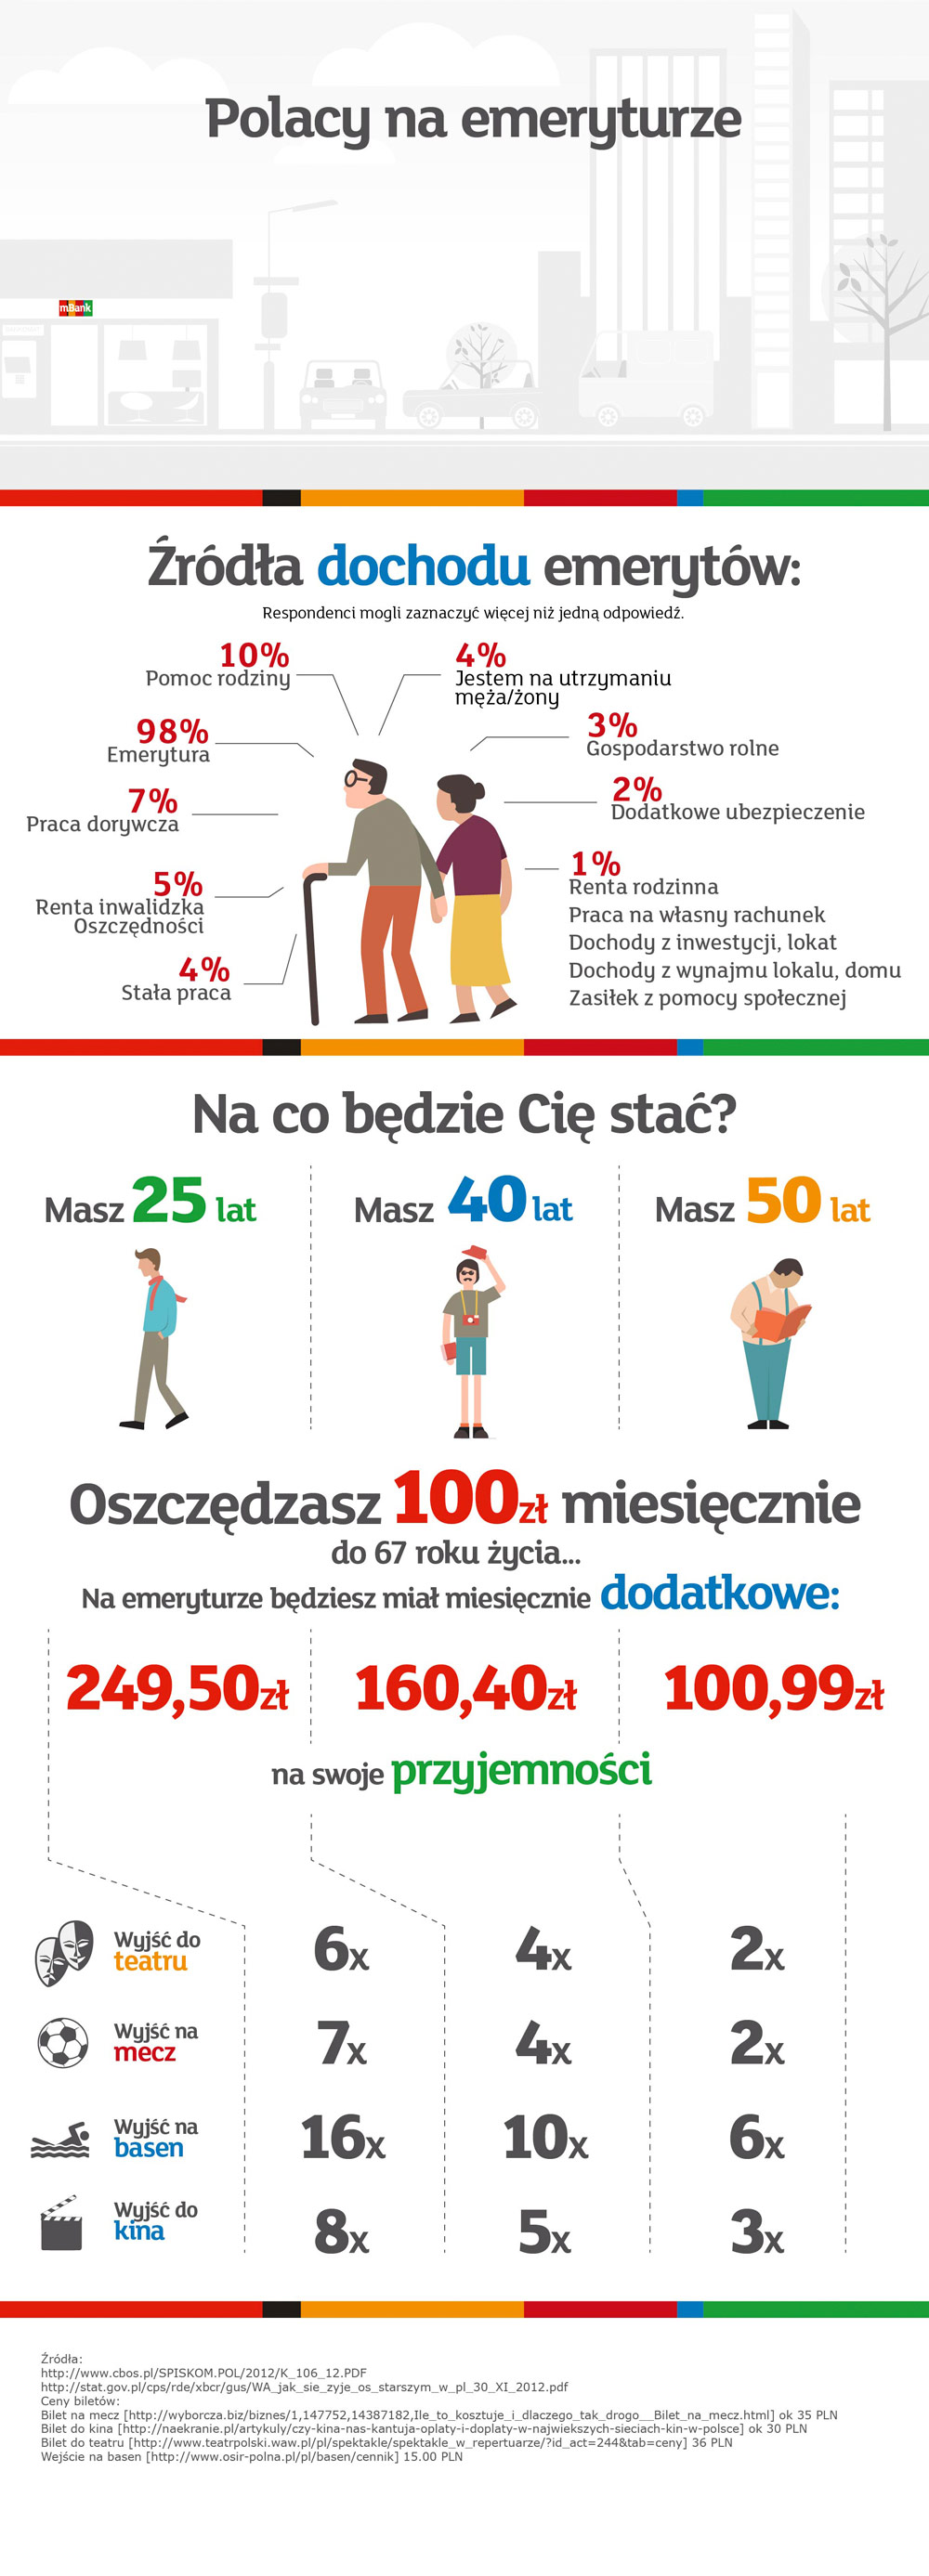 Polacy na emeryturze